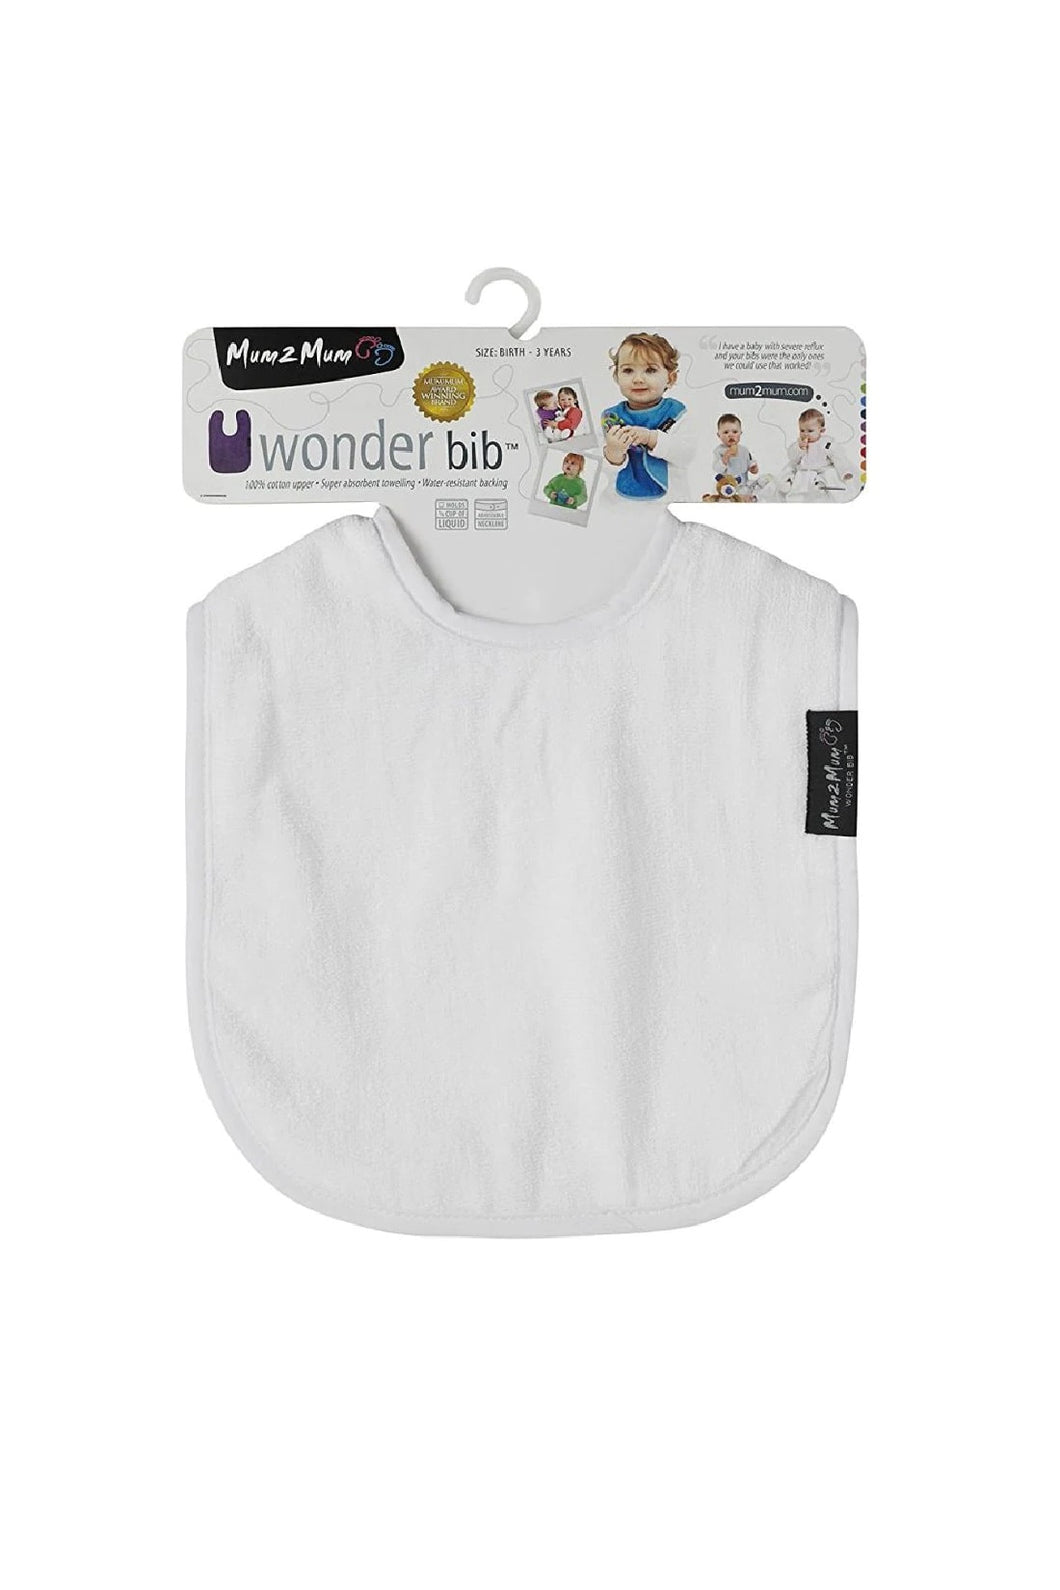 Mum2Mum Standard Wonder Bib White 1